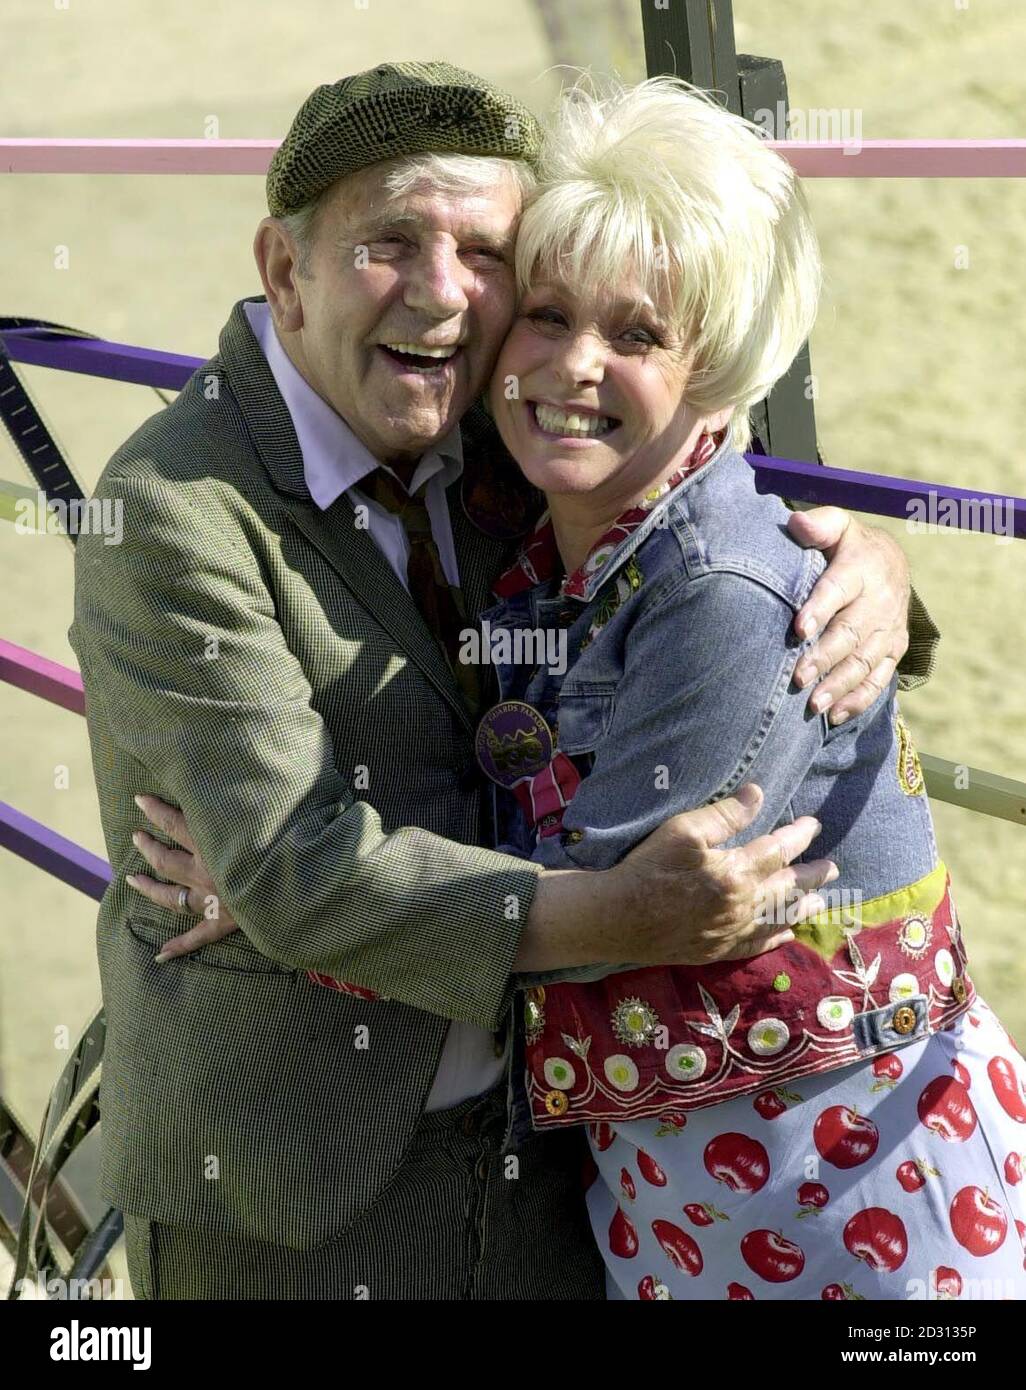 Sir Norman Wisdom e Barbara Windsor si abbracciano durante la cerimonia di compleanno della Regina Madre alla Horse Guards Parade di Londra. Foto Stock